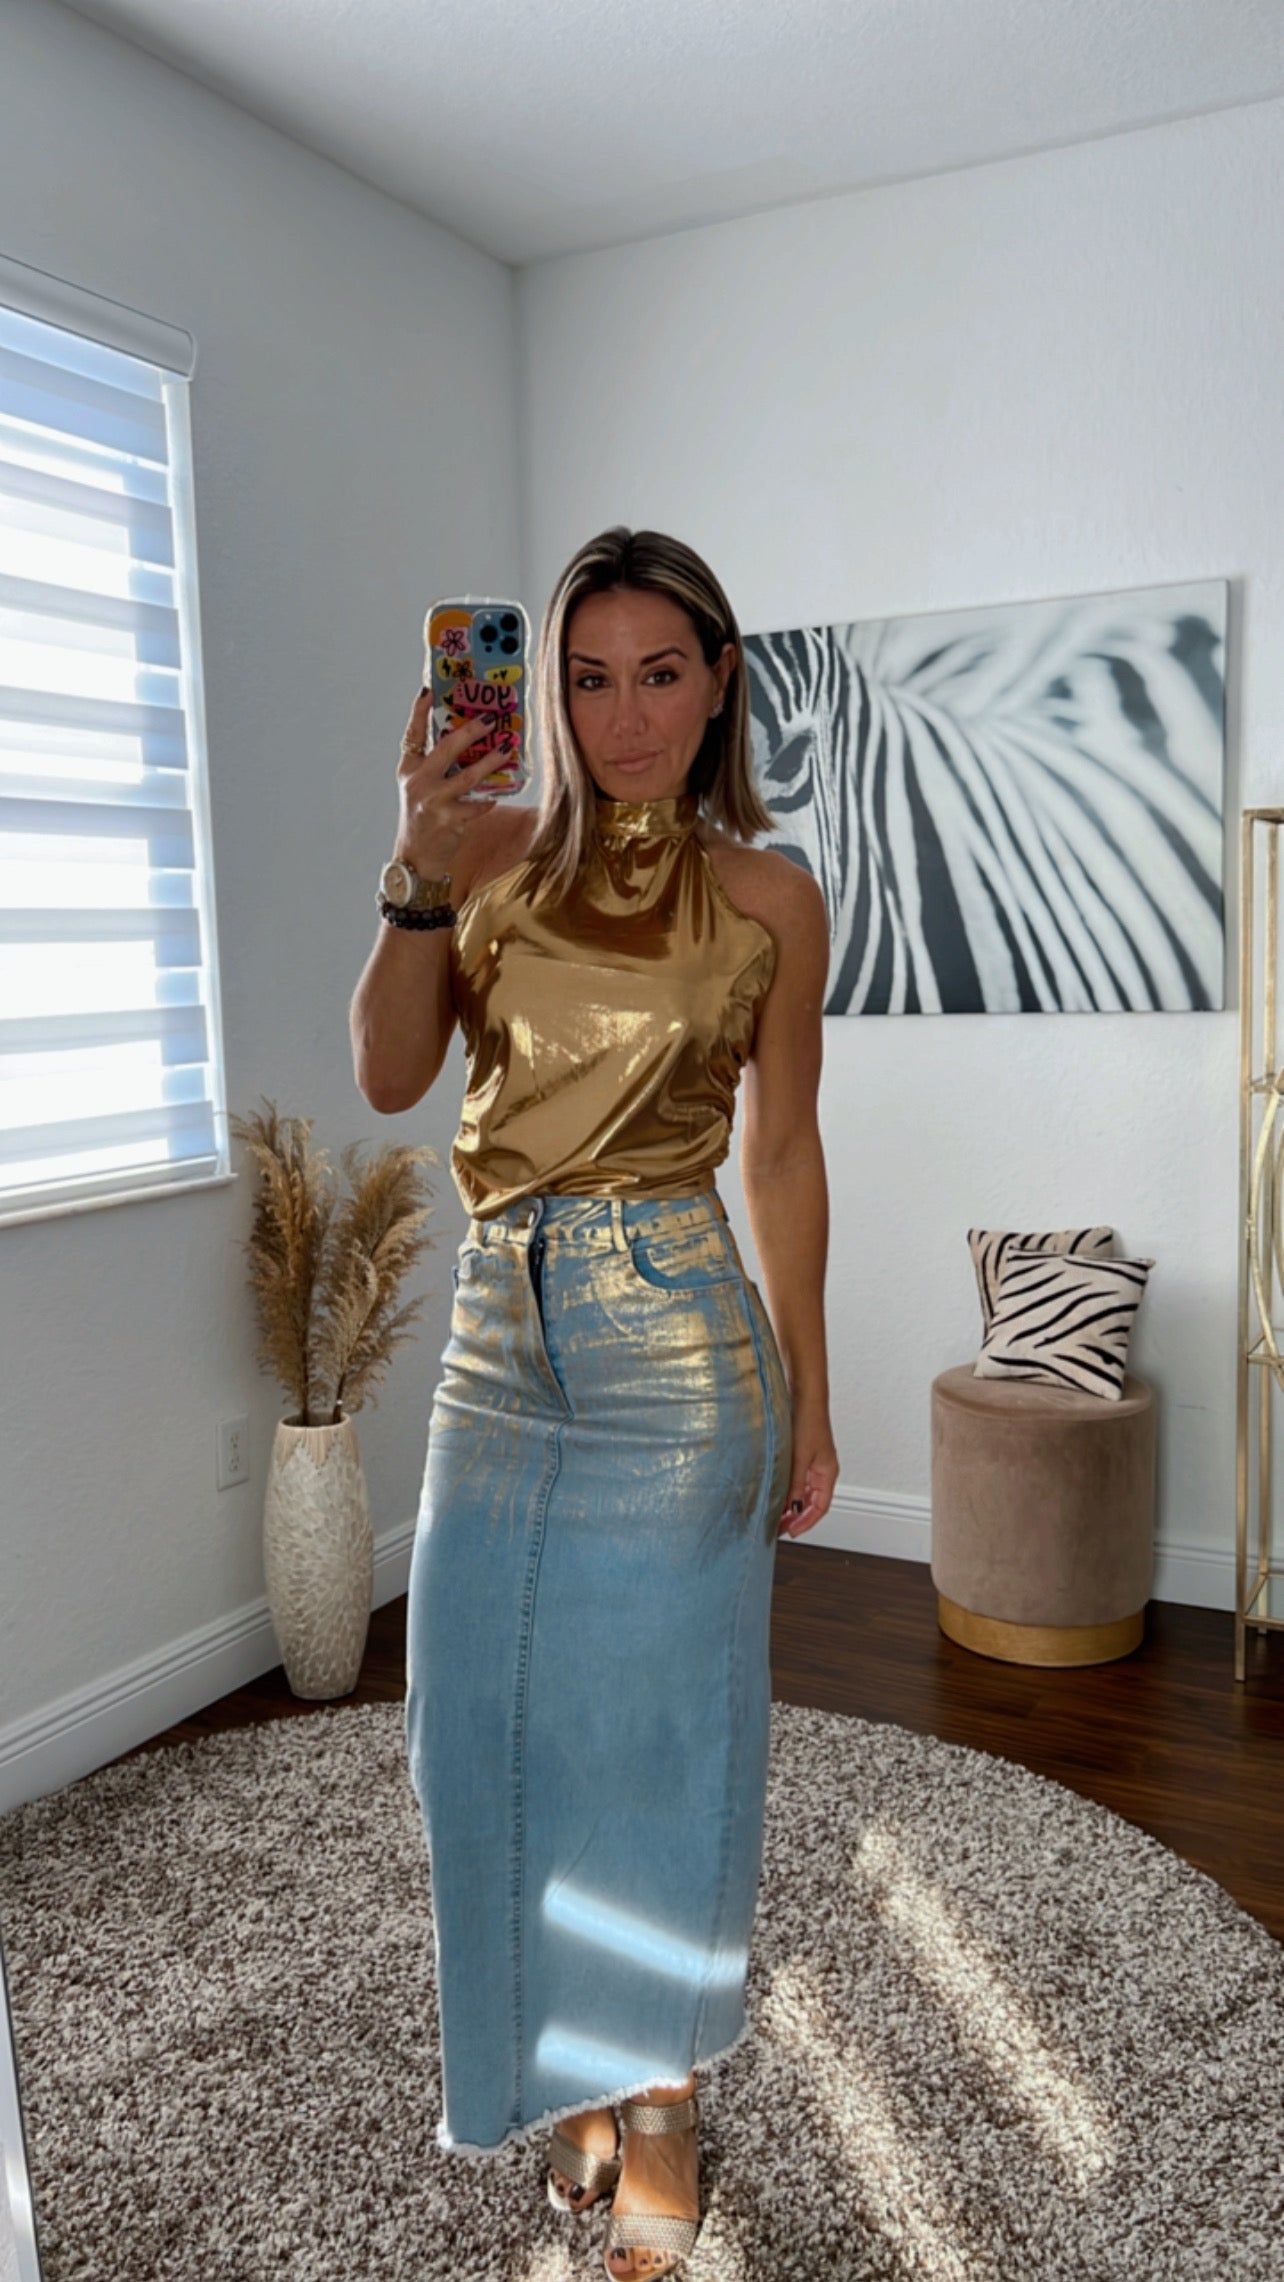 gold Metallic Maxi skirt and top